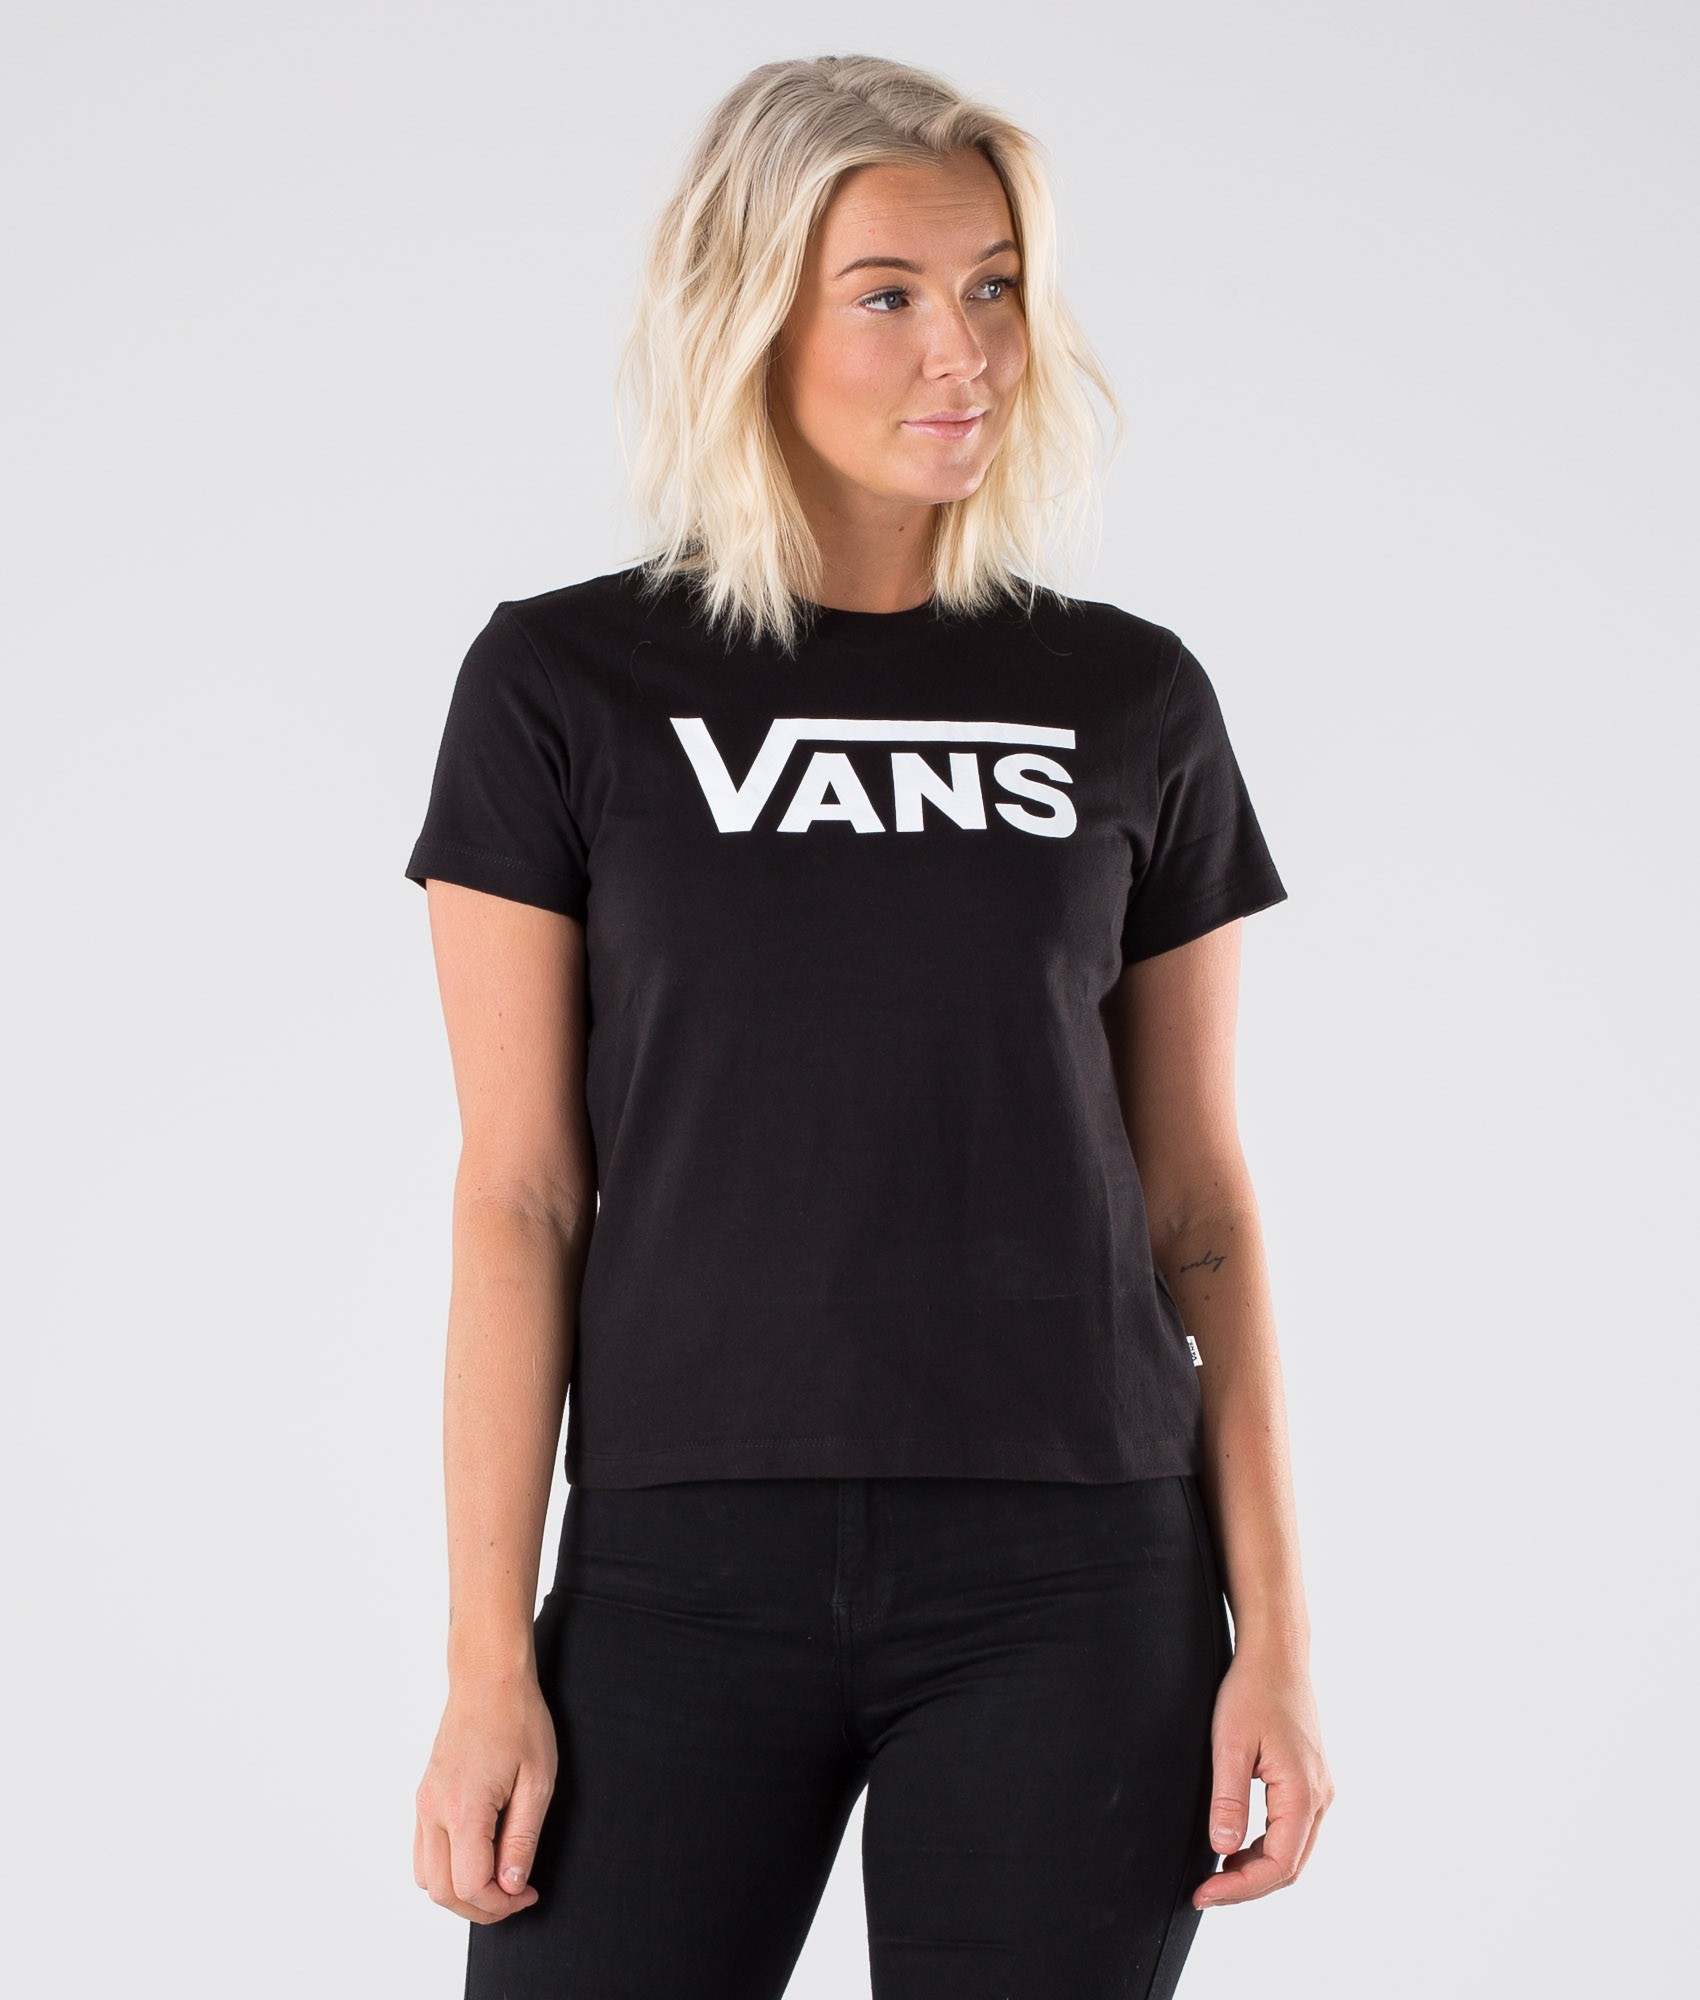 Vans Flying V Crew Tee T-shirt Black 